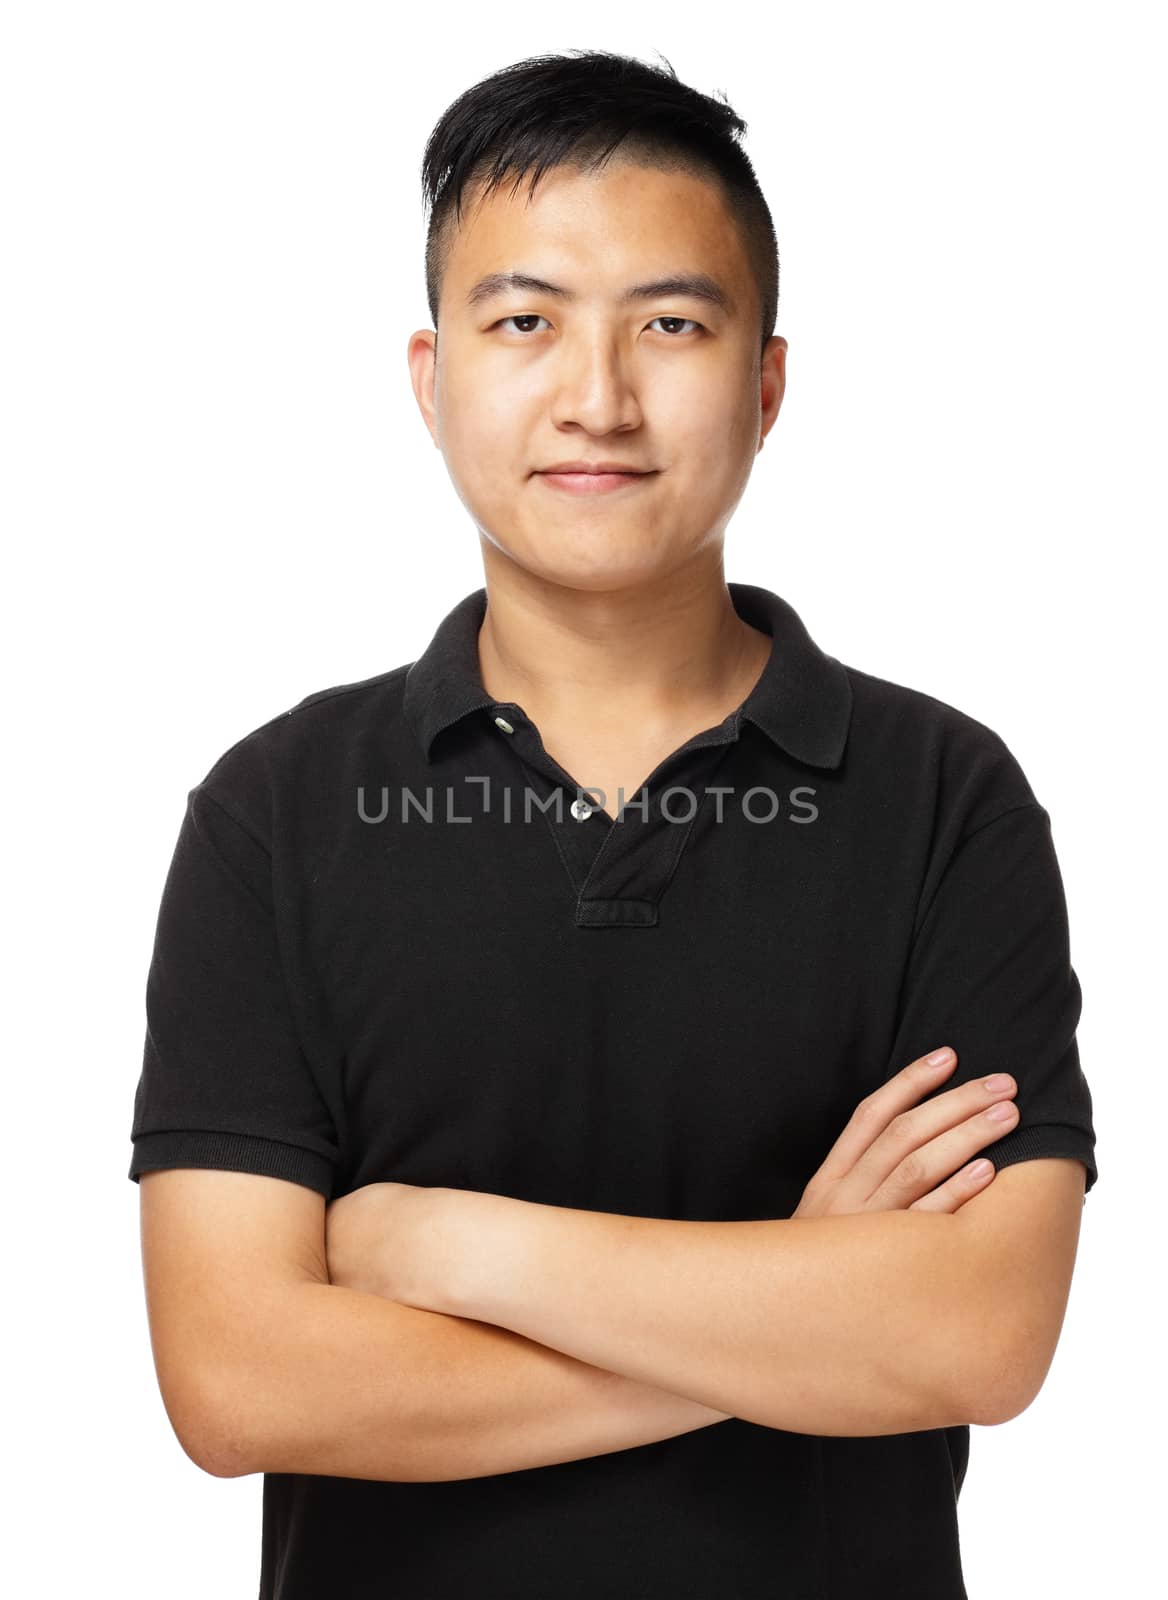 Asian man portrait